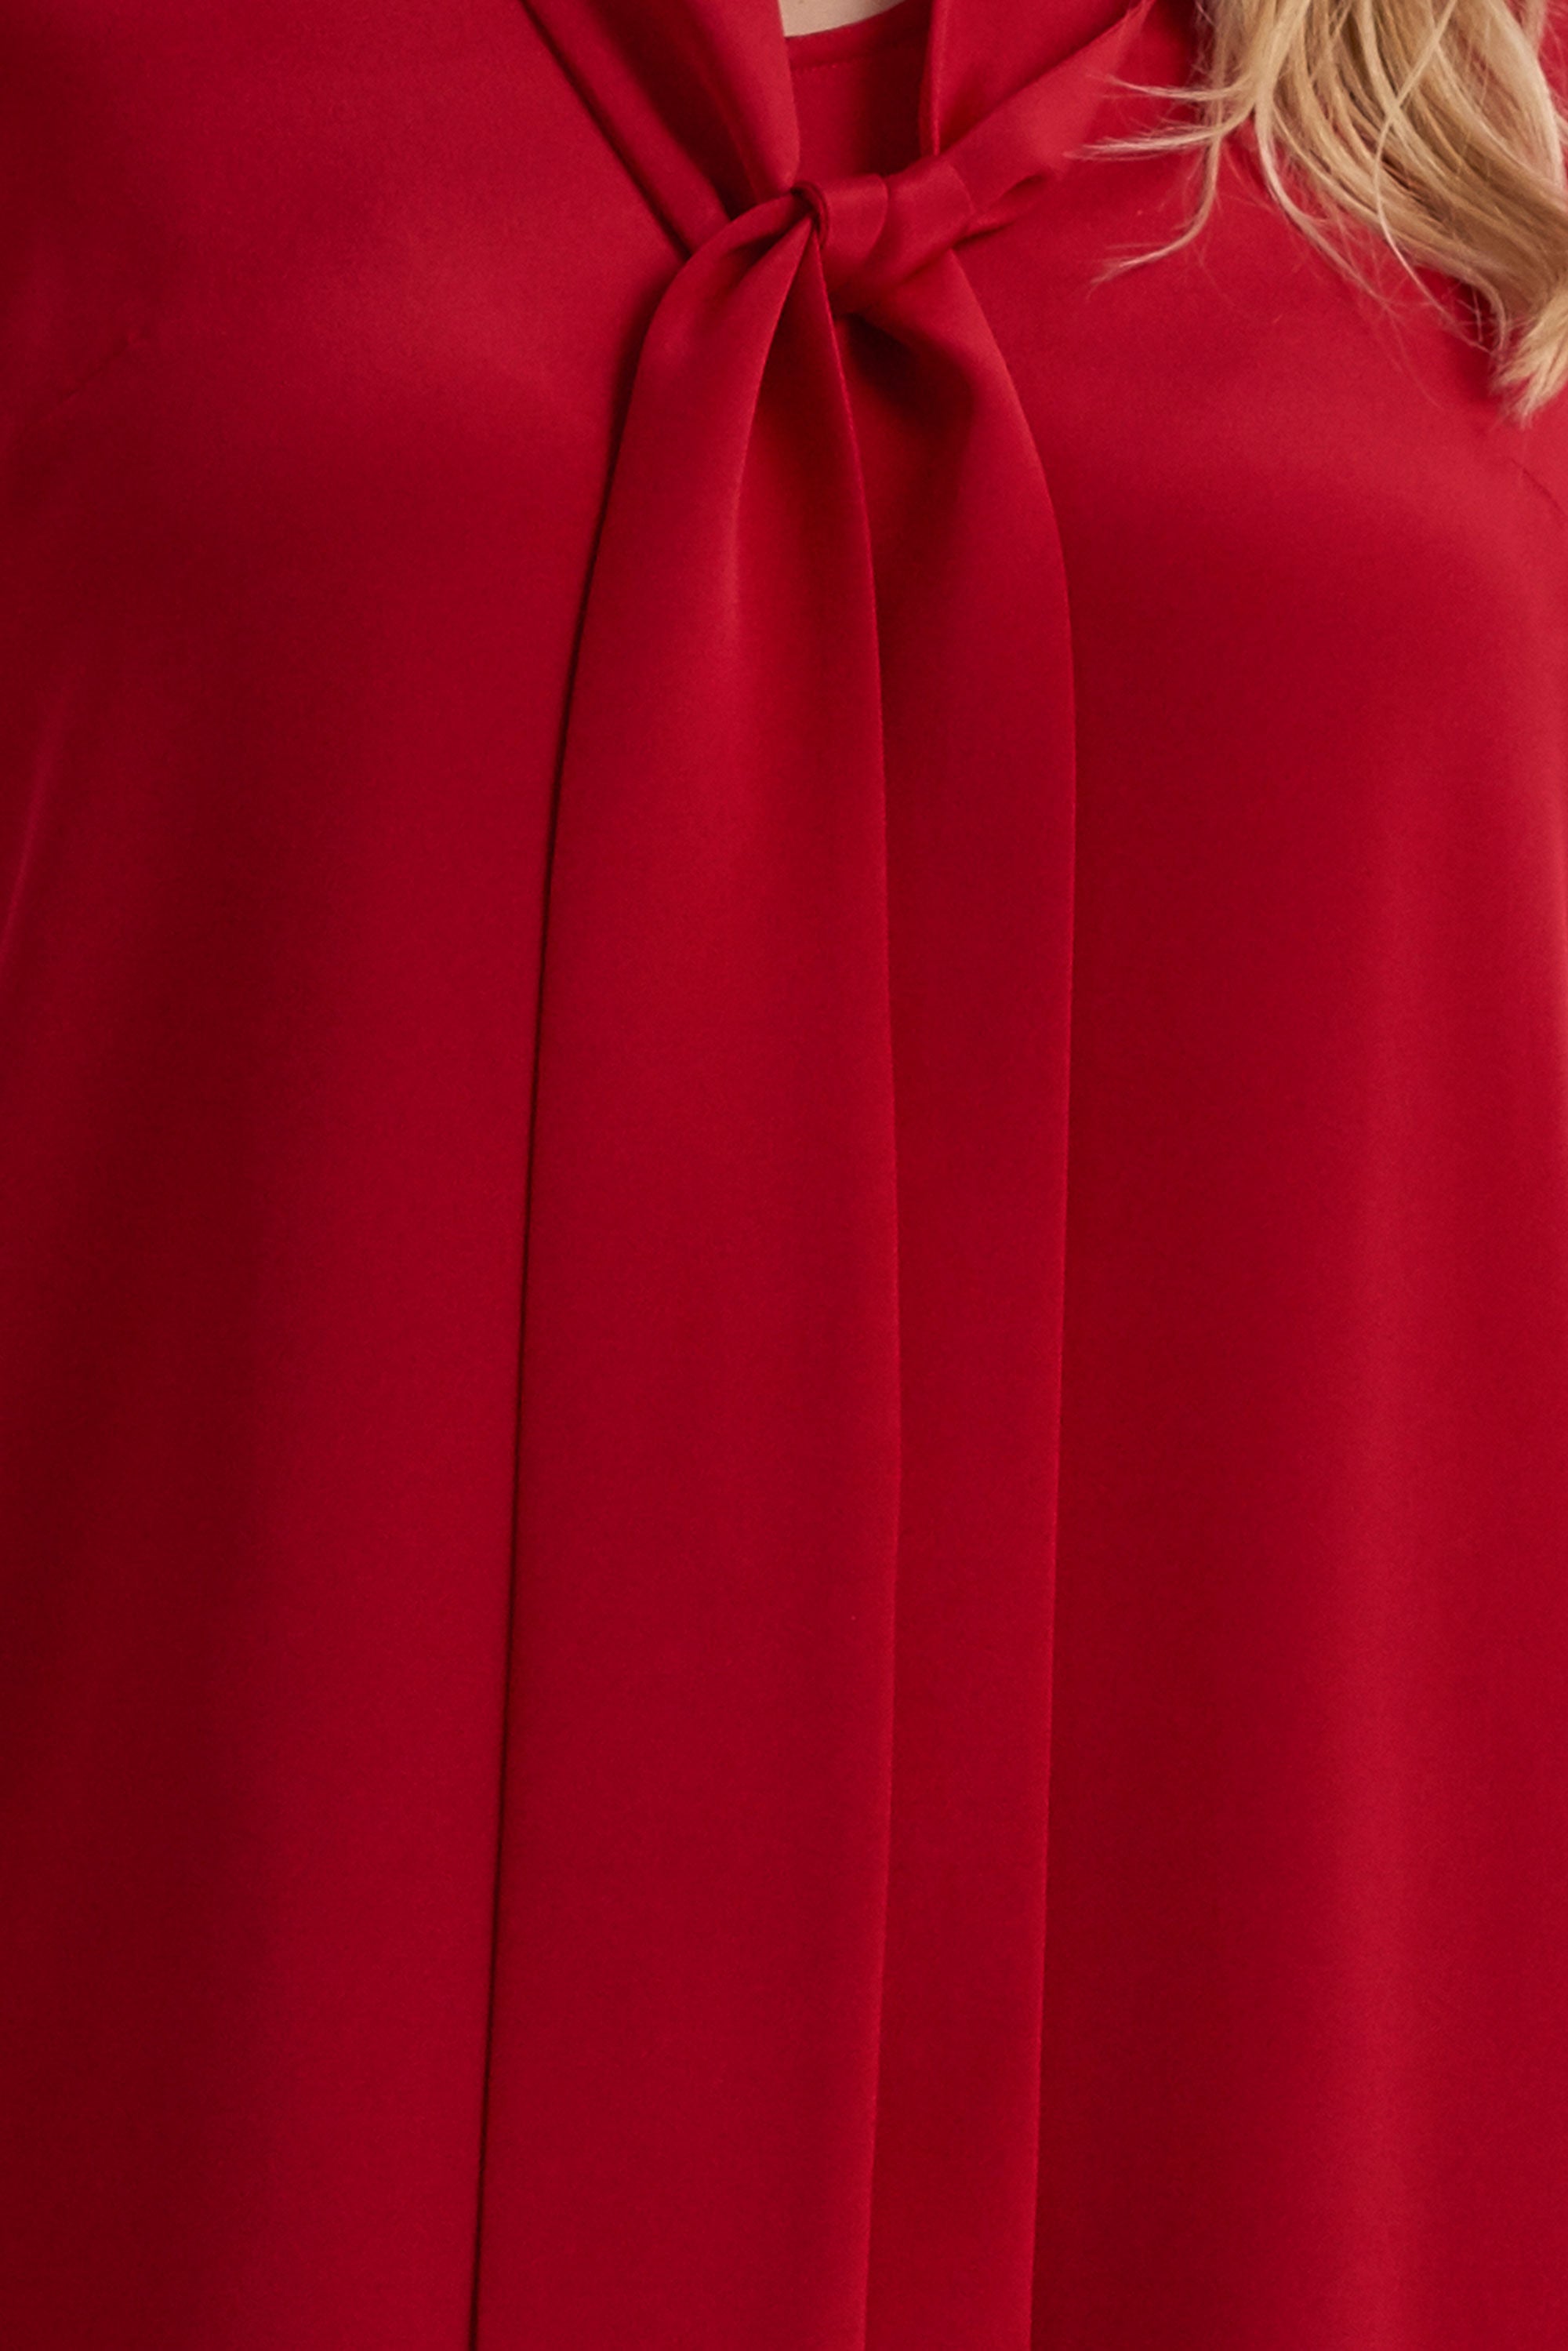 Scarlet Neck Tie Designer Plus Size Blouse - THE HOUR